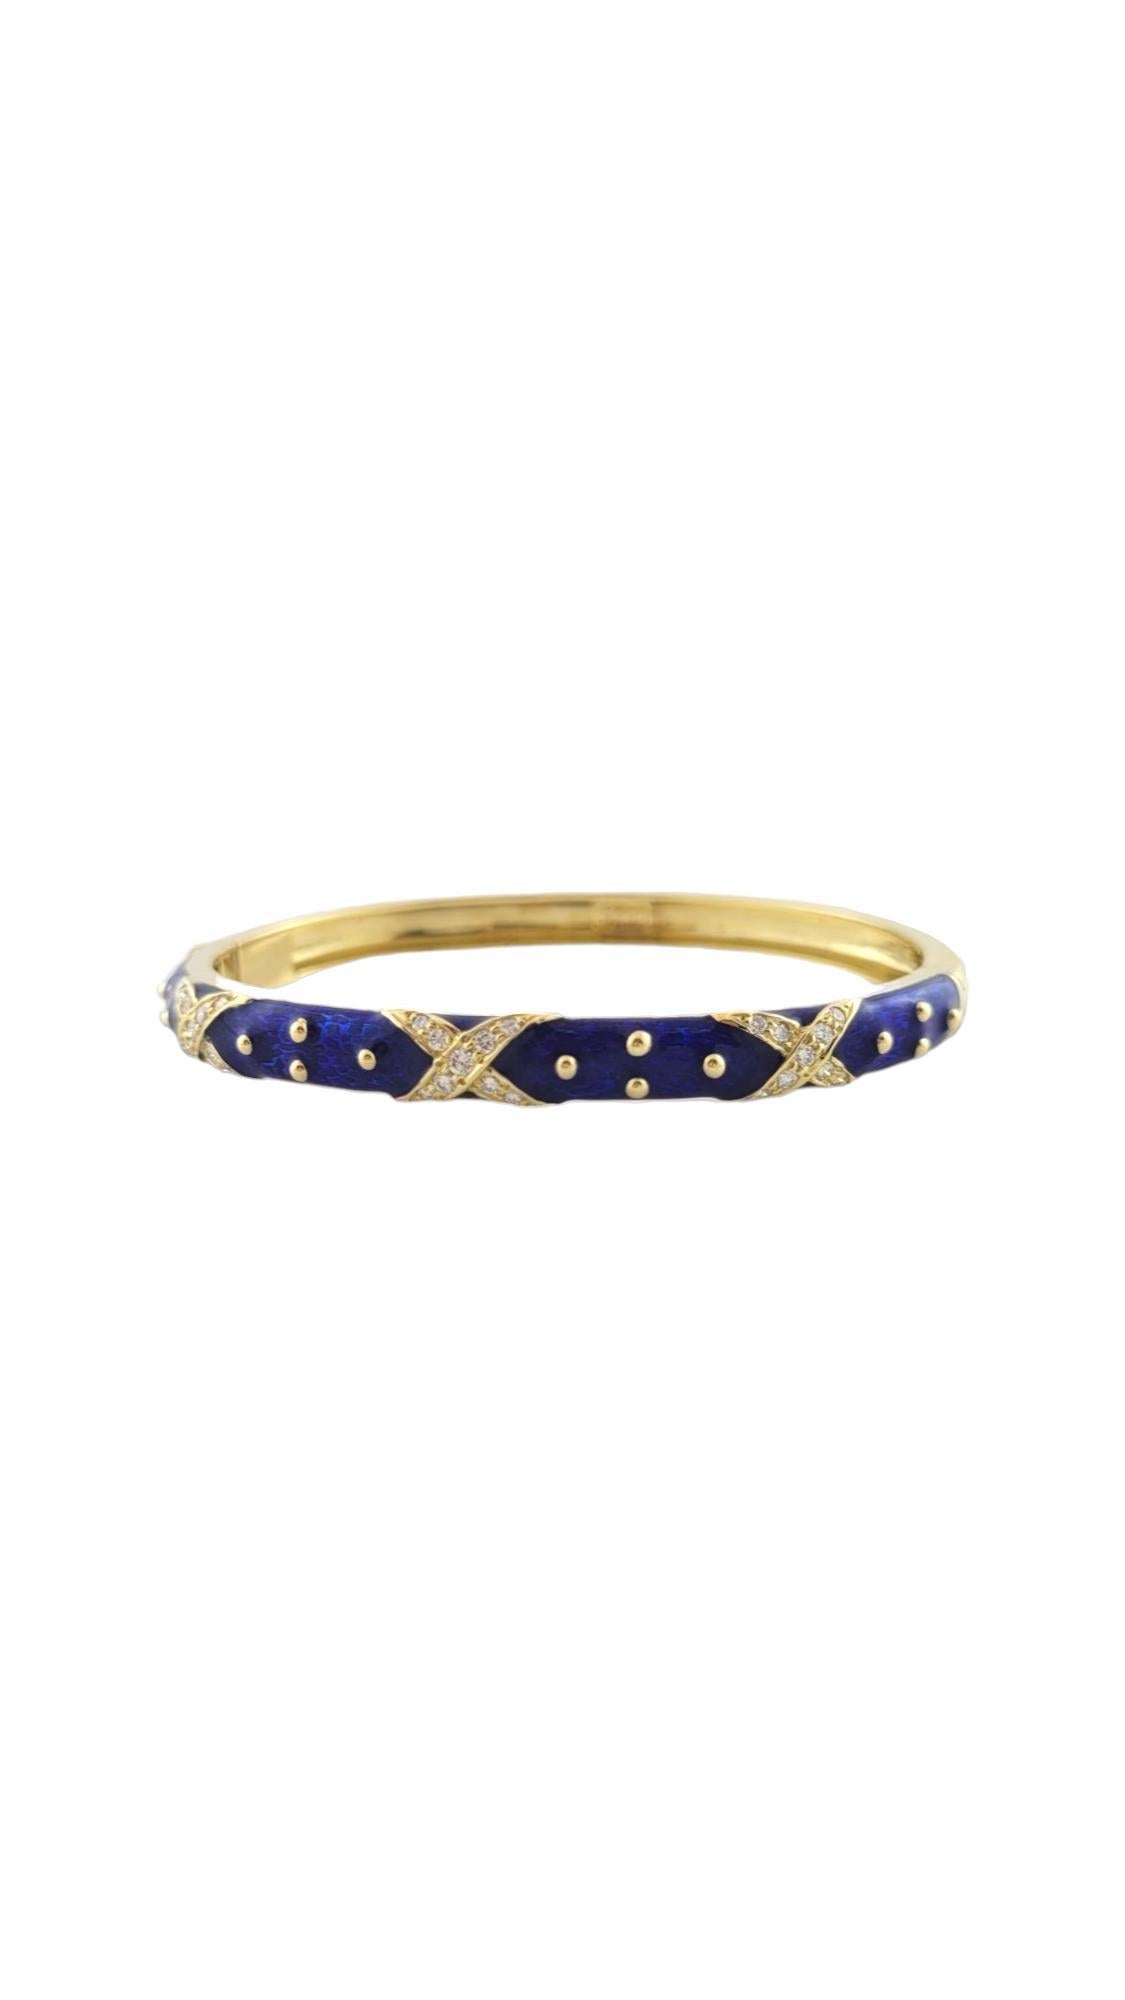 Hidalgo 18K Gelbgold Blau Emaille Diamant X Scharnier-Armspange

Scharnierarmband aus 18 Karat Gelbgold mit 